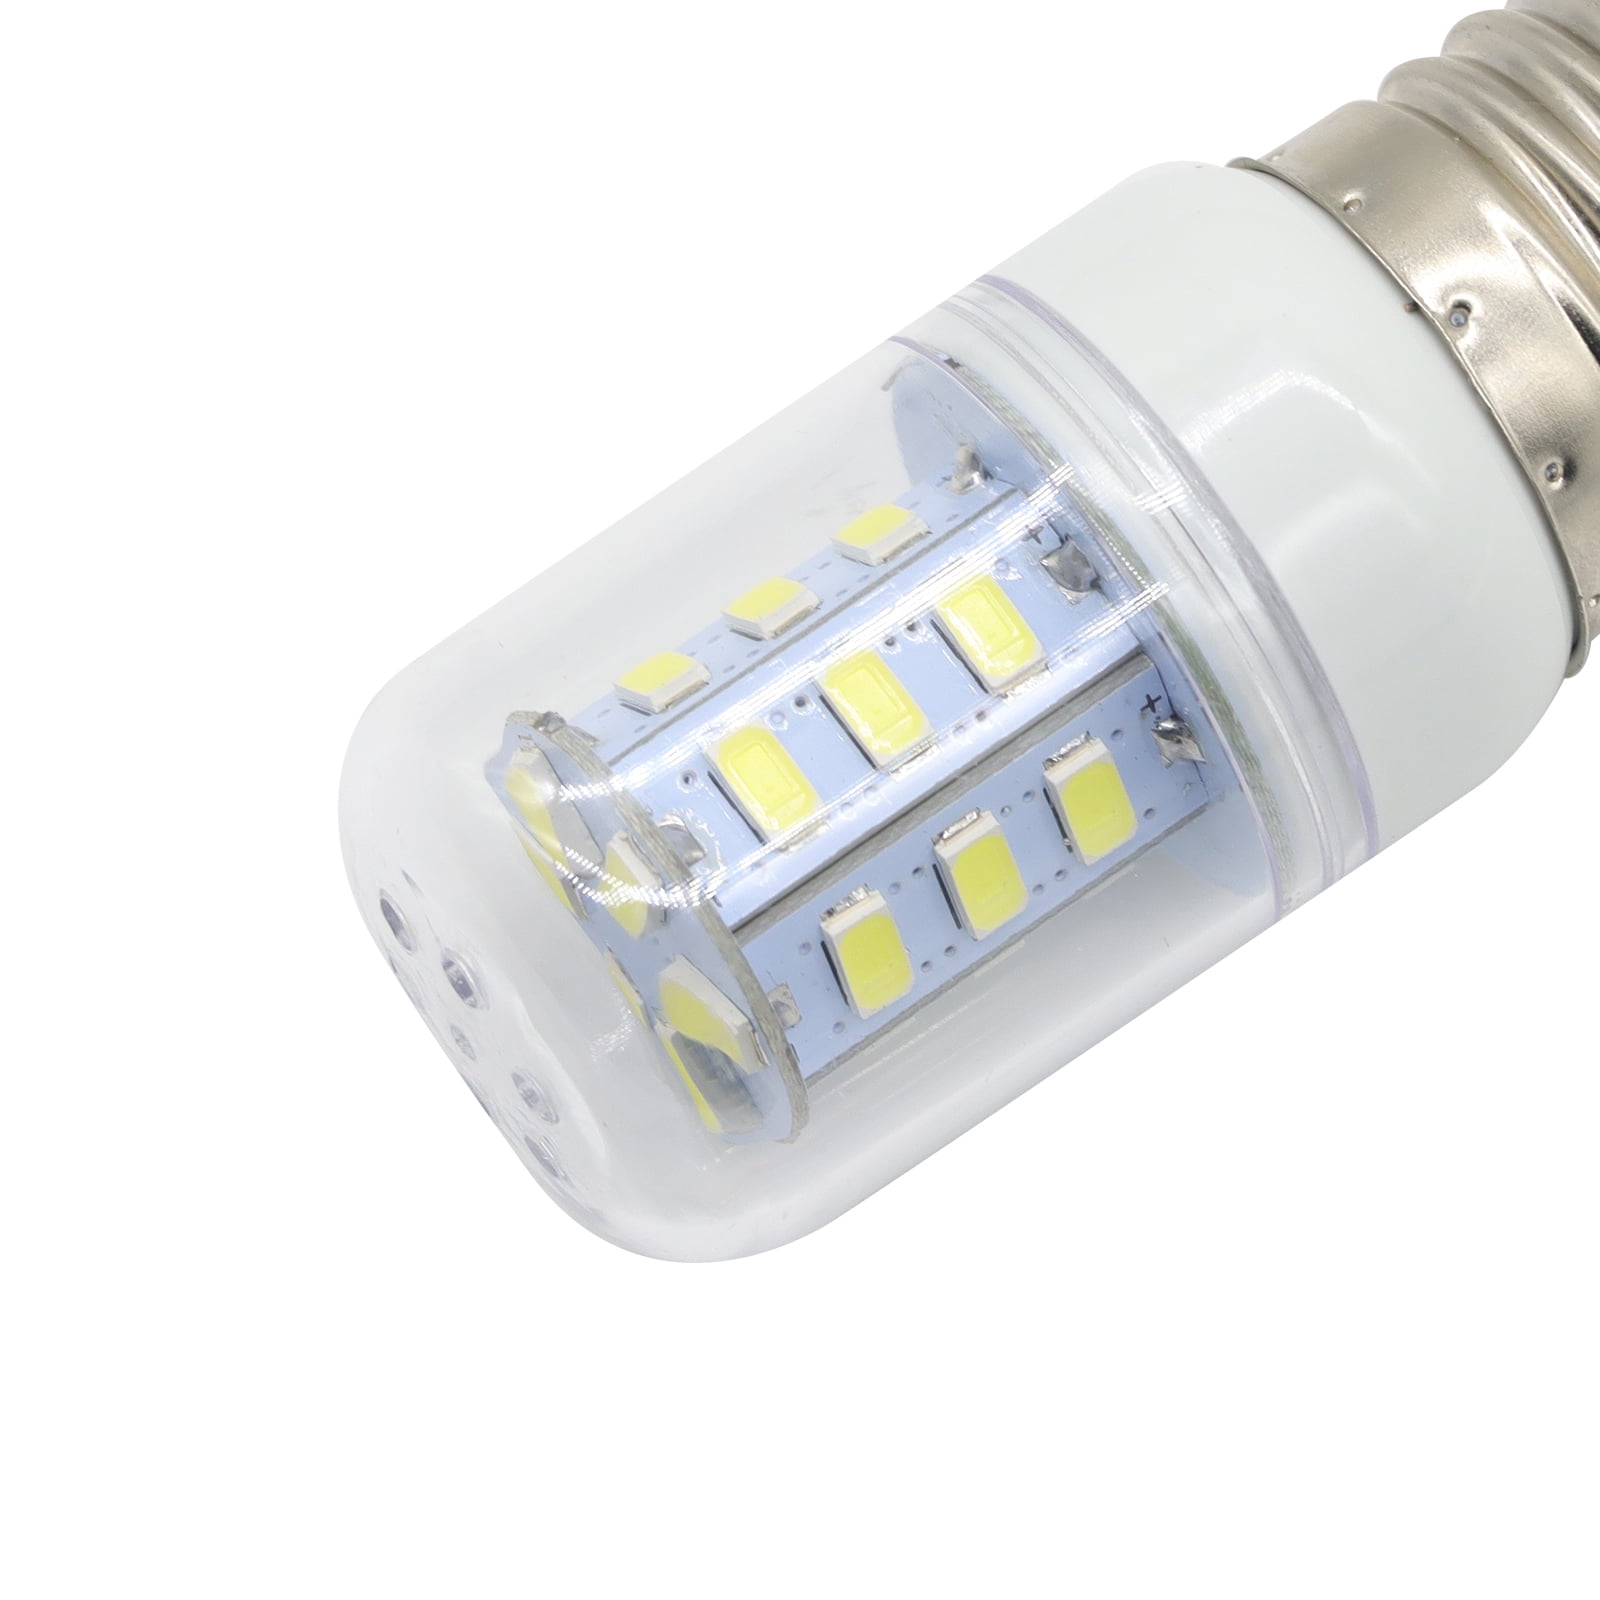  MIFLUS LED Refrigerator Light Bulb 5304511738 Kei D34l  Refrigerator Bulb Fits For Fri/gidaire Refrigerator LED Bulb